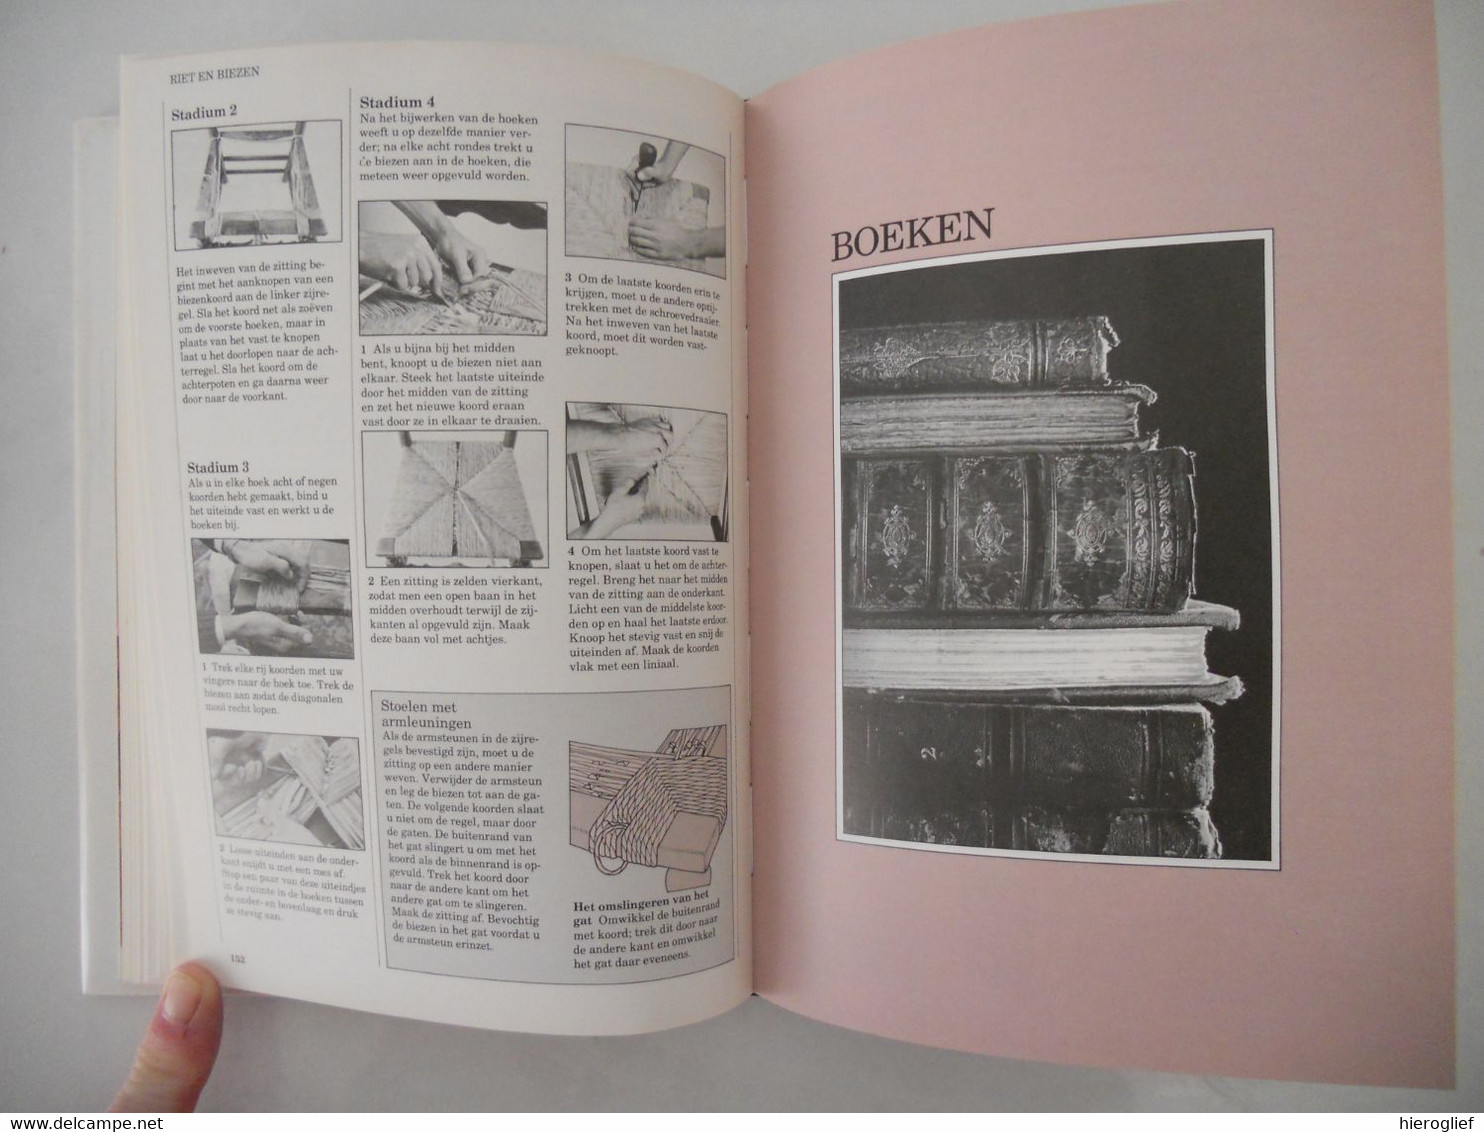 REPARATIE & ONDERHOUD van DIERBARE DINGEN door Albert Jackson David Day antiek wapens meubels aardewerk riet